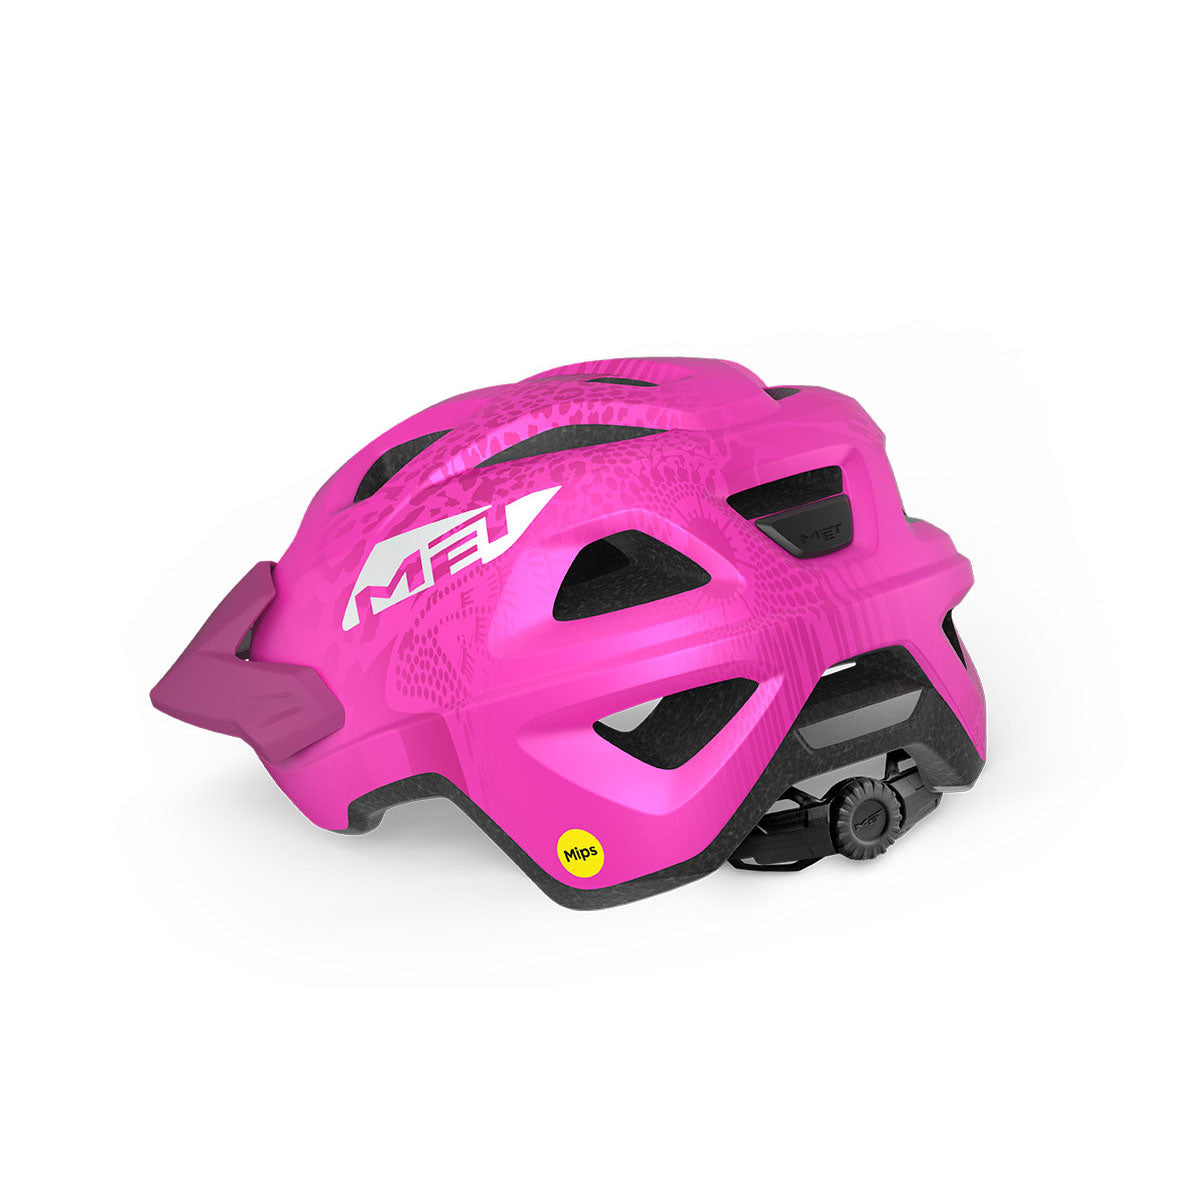 Eldar Mips MTB Kids Helmet